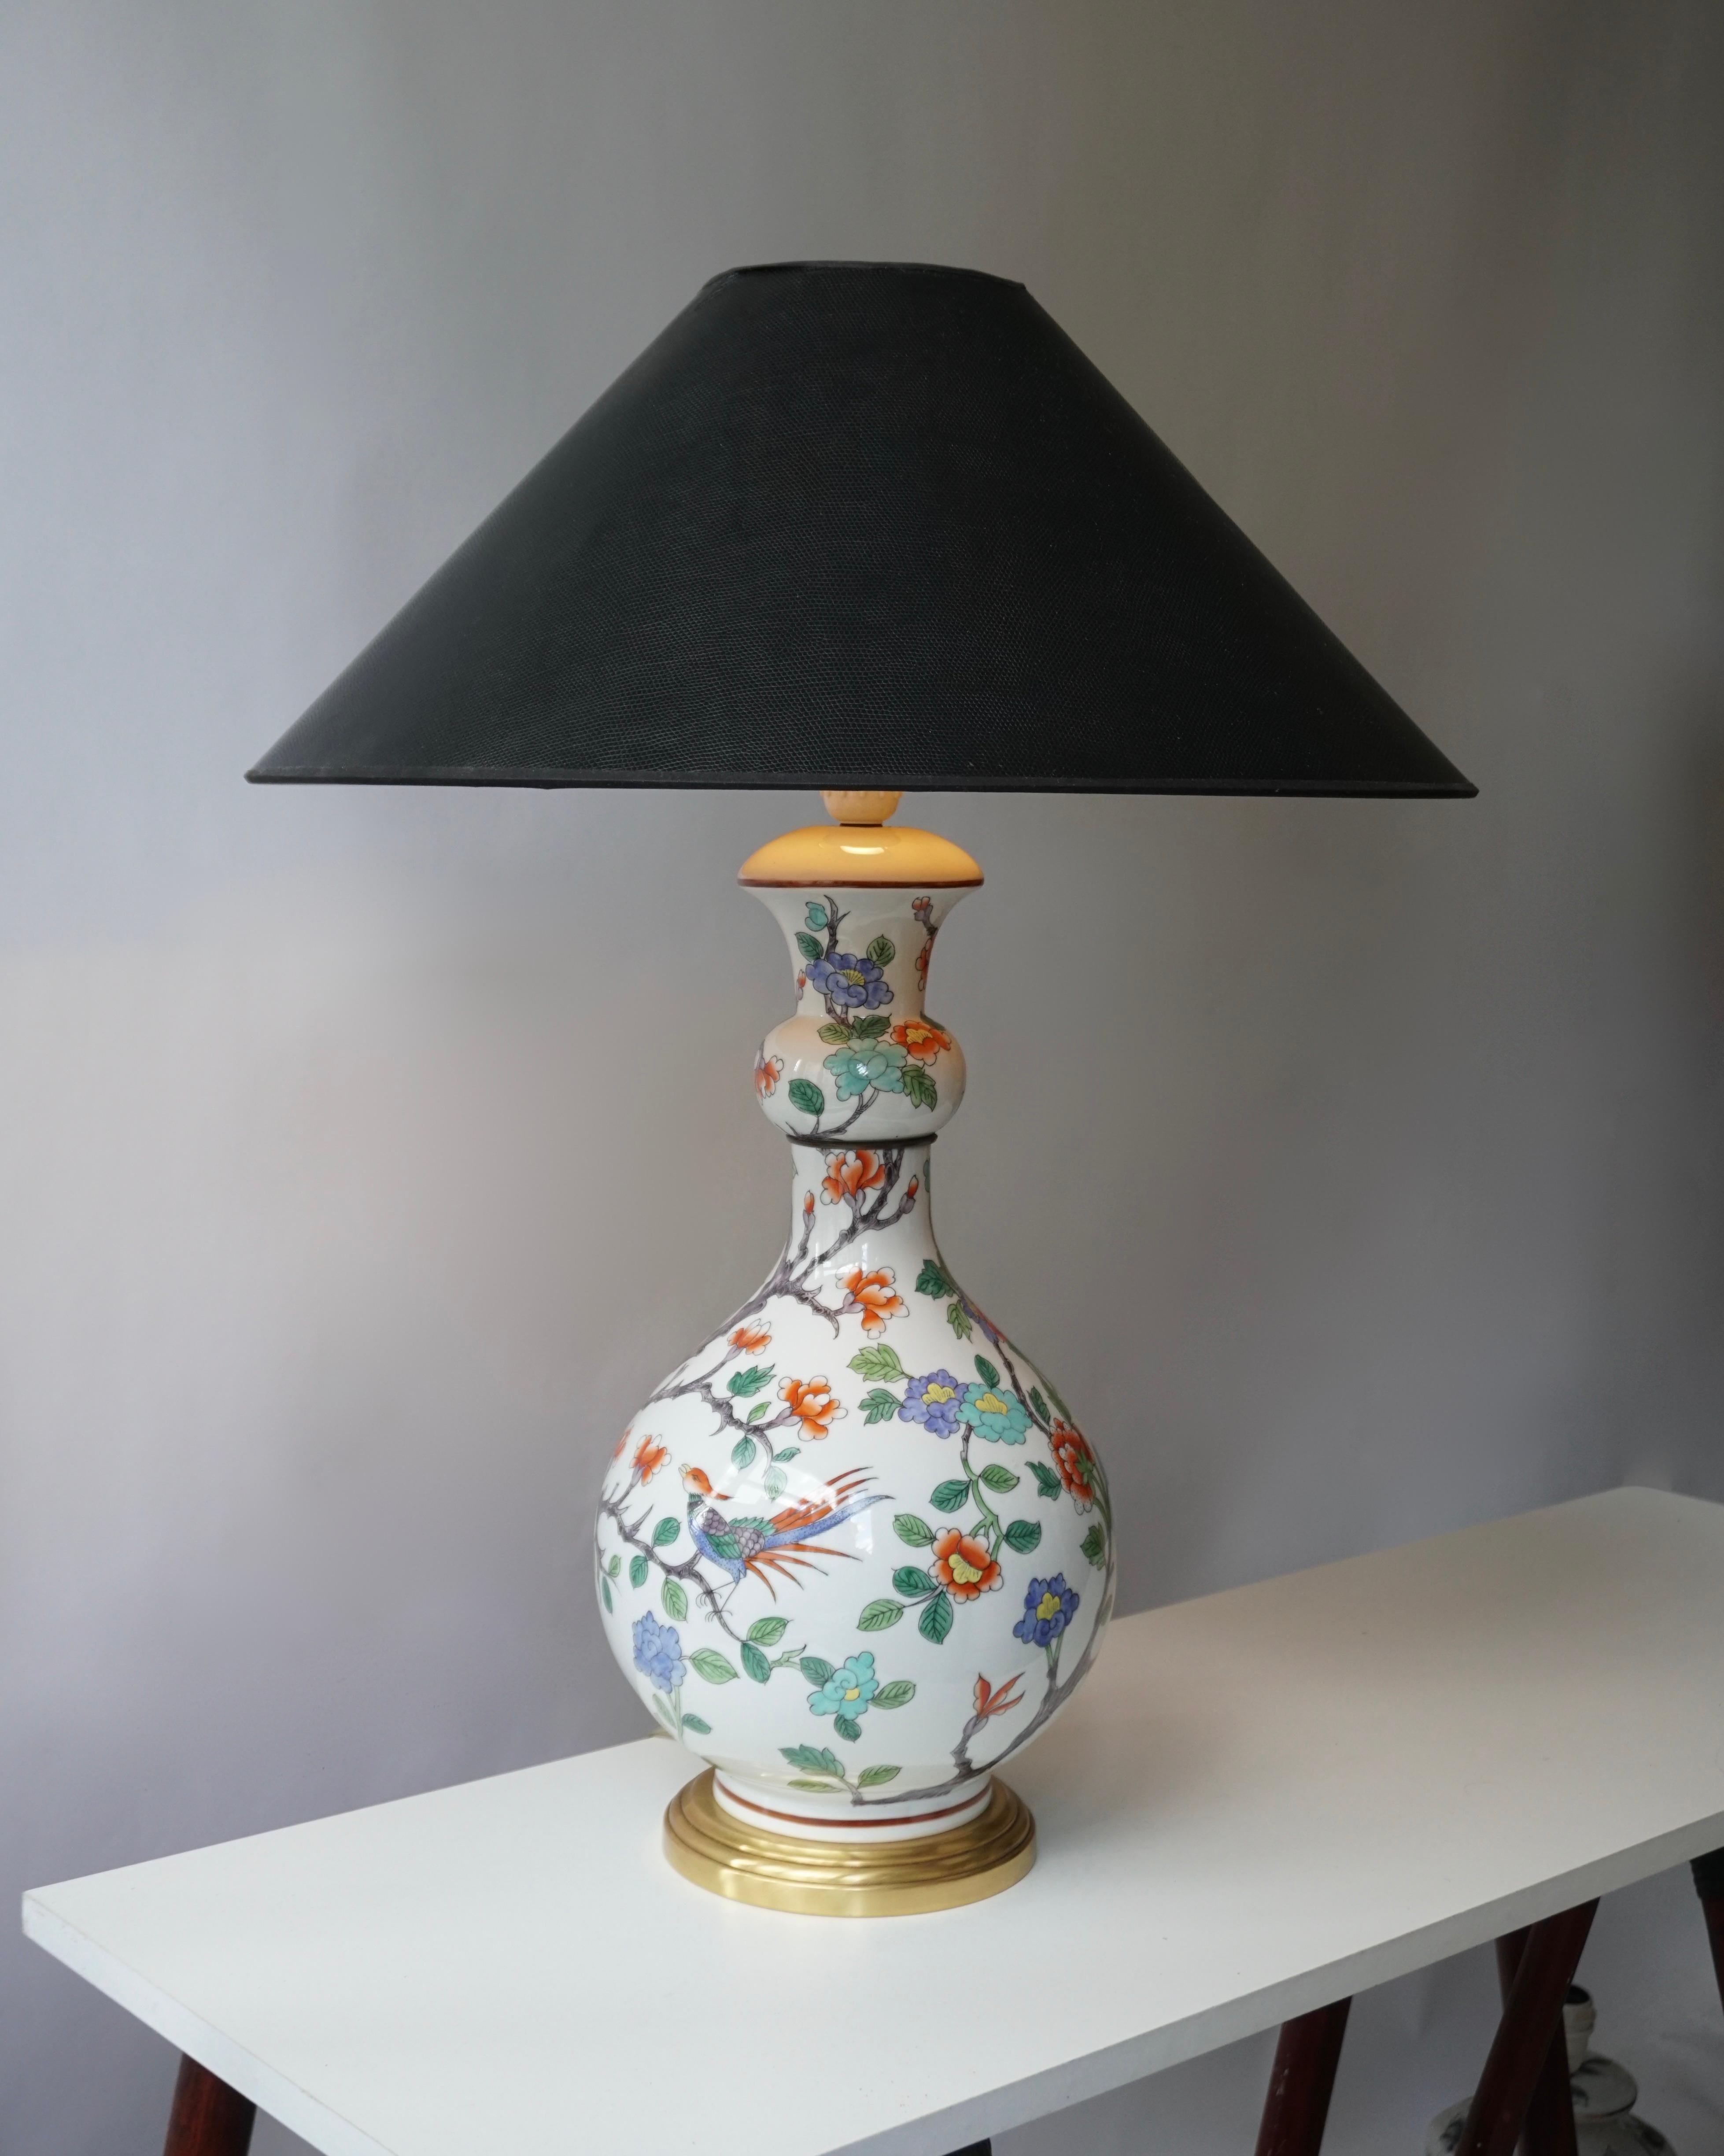 Lampe de table en porcelaine décorée de fleurs colorées et d'un oiseau.
Le dessous porte le cachet bleu sous glaçure 